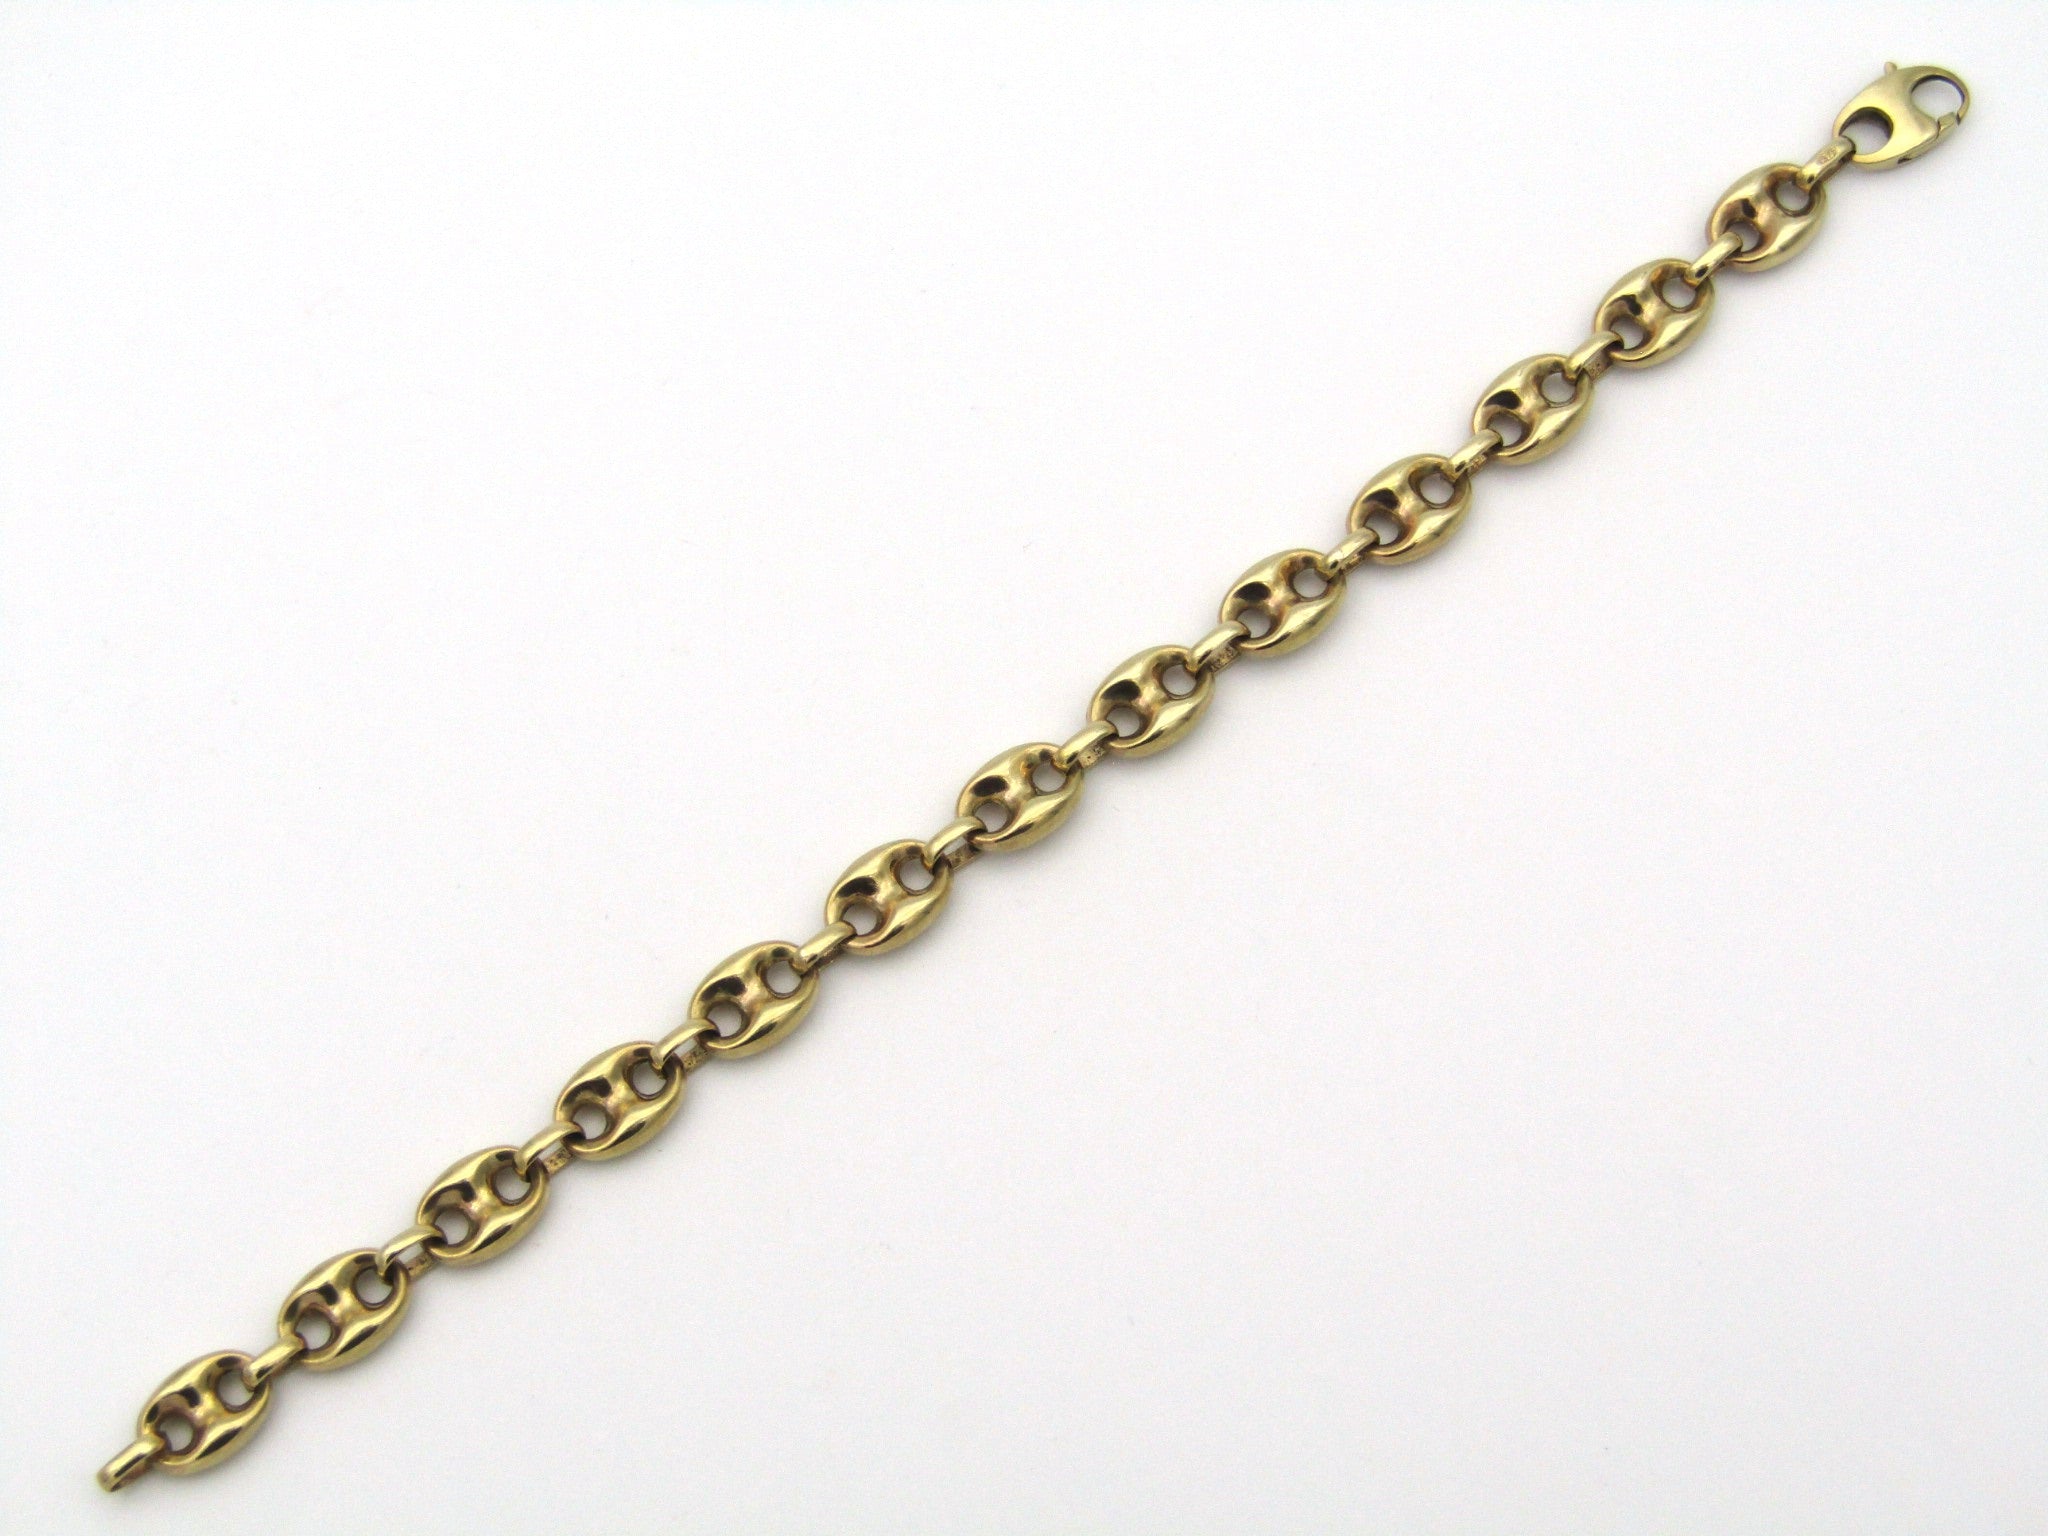 9K gold mariner link bracelet.